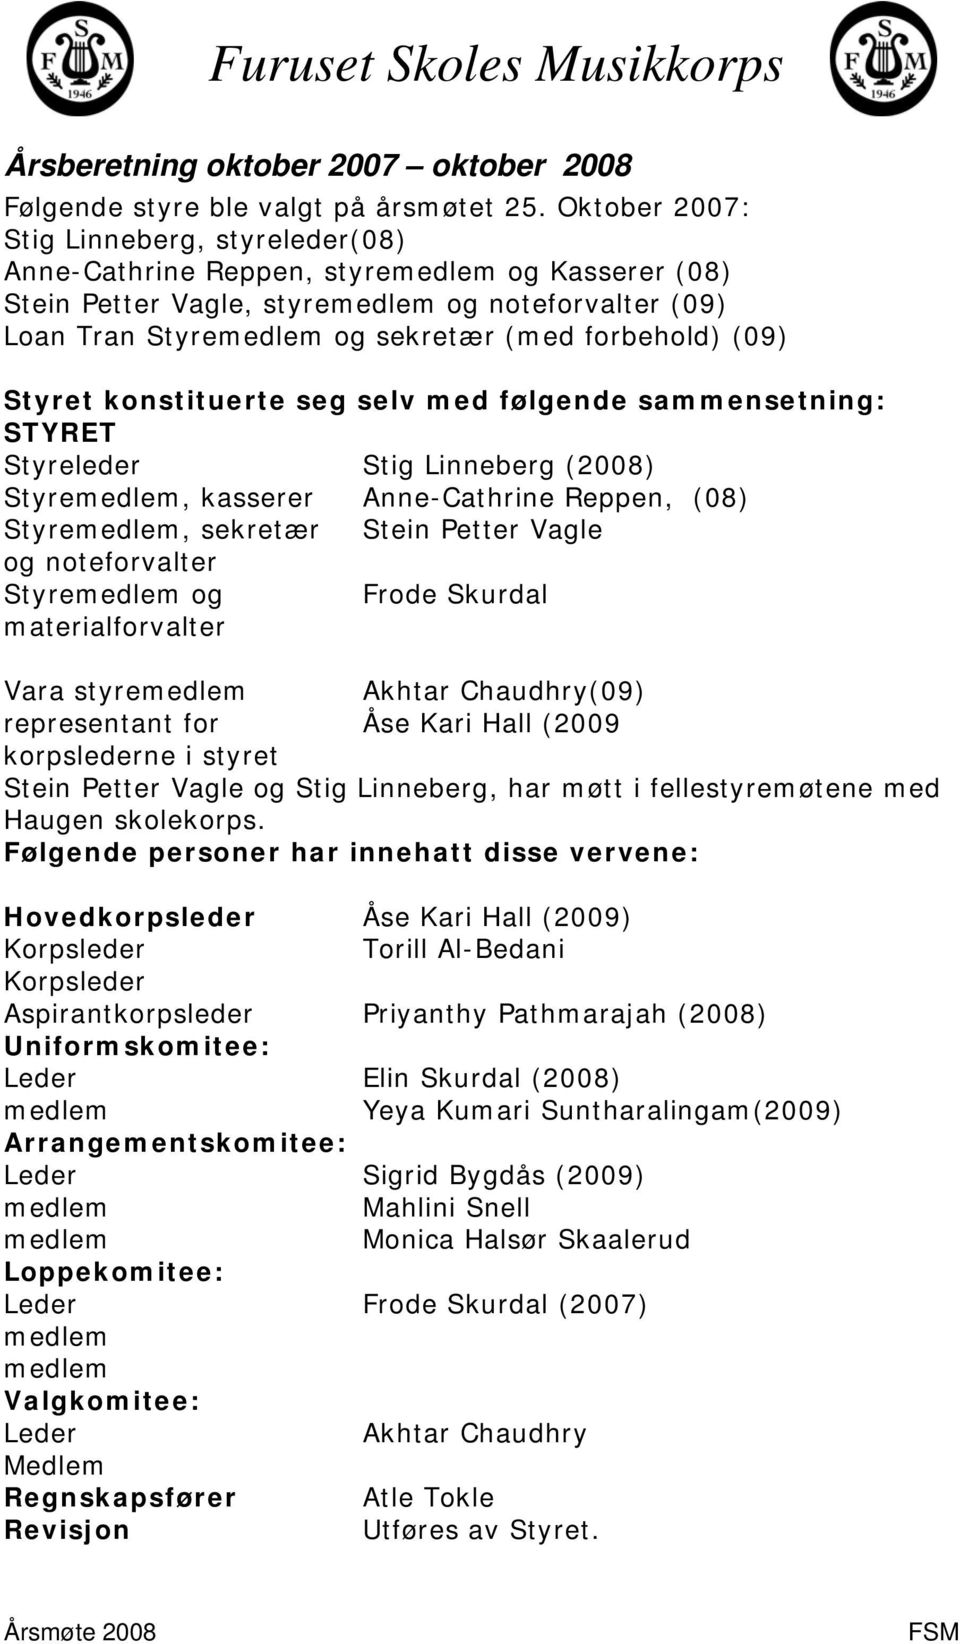 (09) Styret konstituerte seg selv med følgende sammensetning: STYRET Styreleder Stig Linneberg (2008) Styremedlem, kasserer Anne-Cathrine Reppen, (08) Styremedlem, sekretær Stein Petter Vagle og